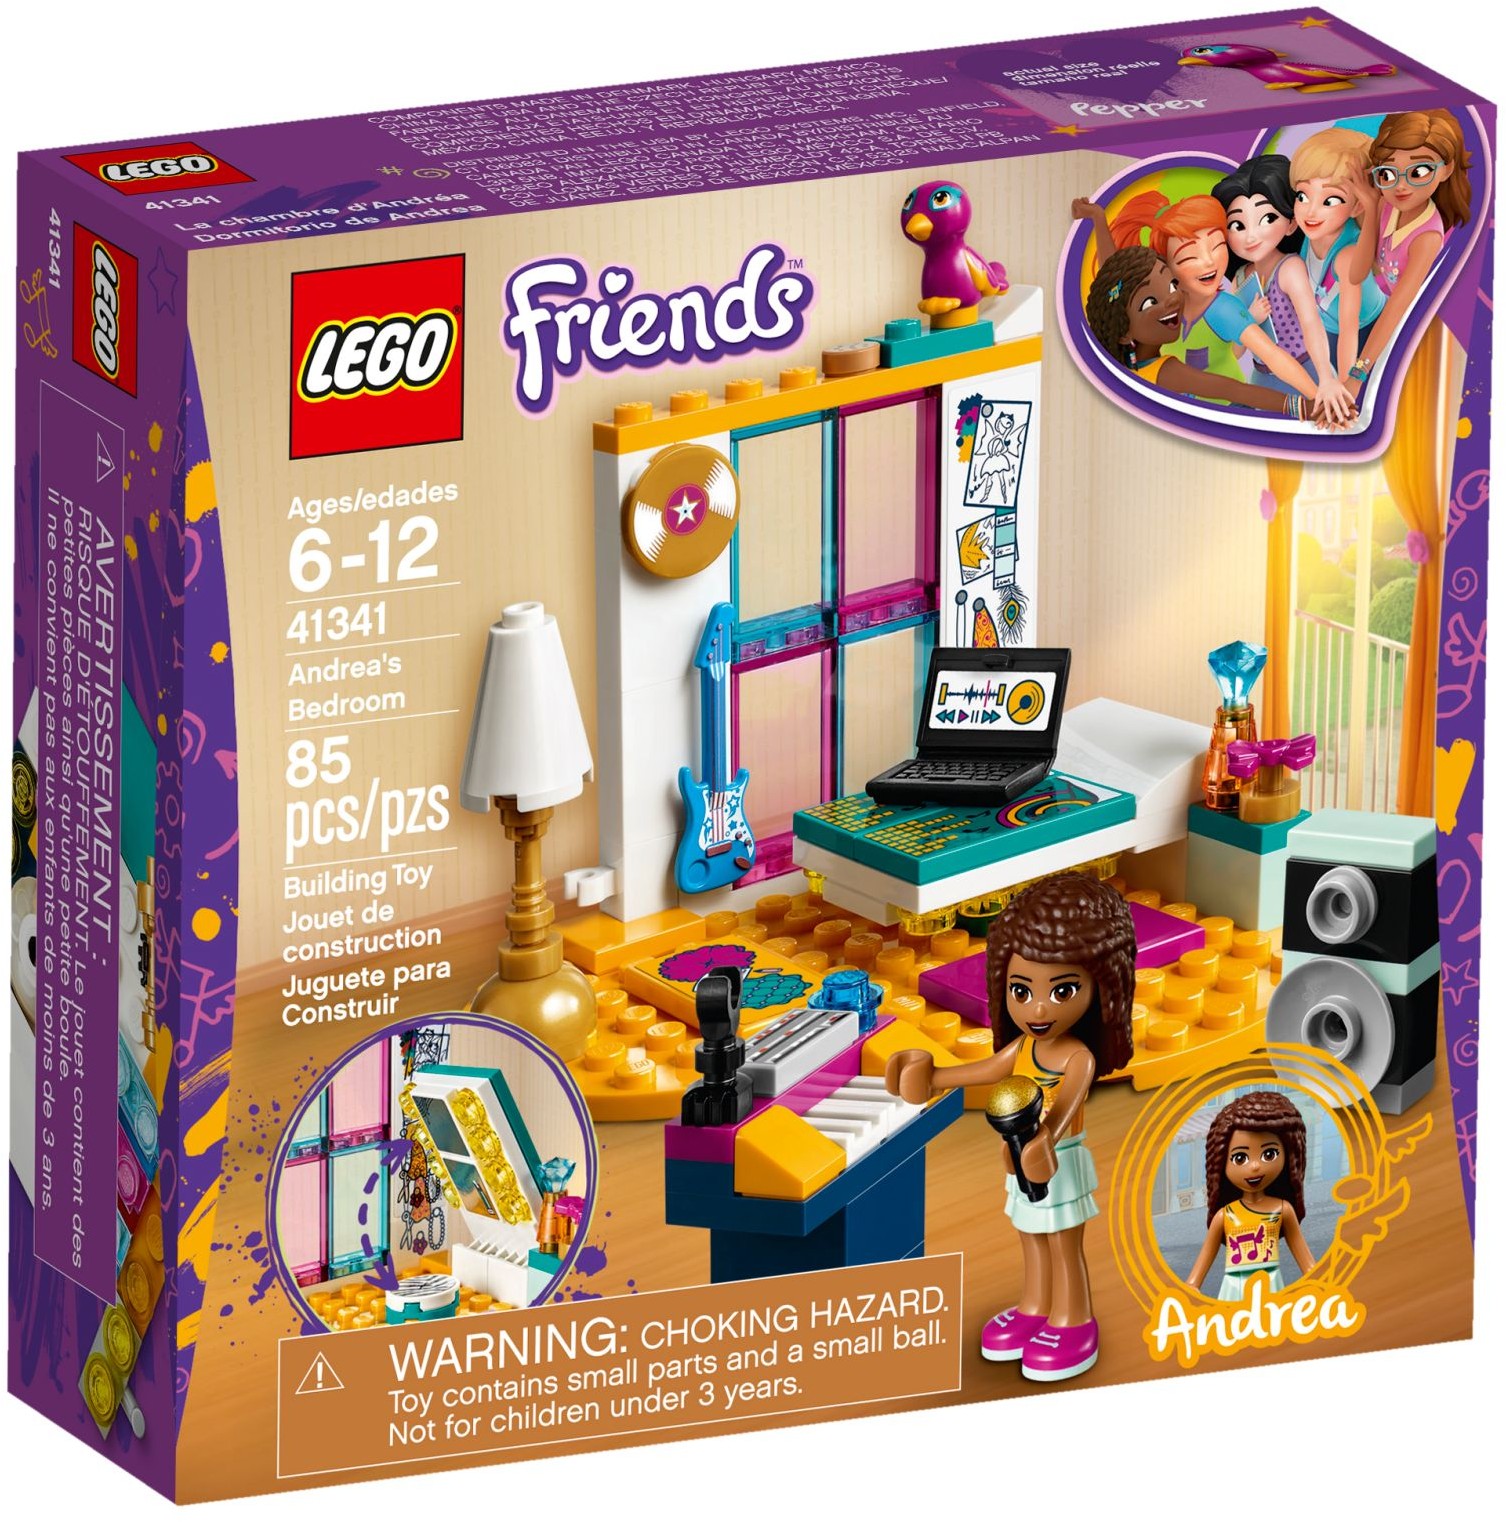 Andrea's Bedroom | LEGO Friends Wiki | Fandom